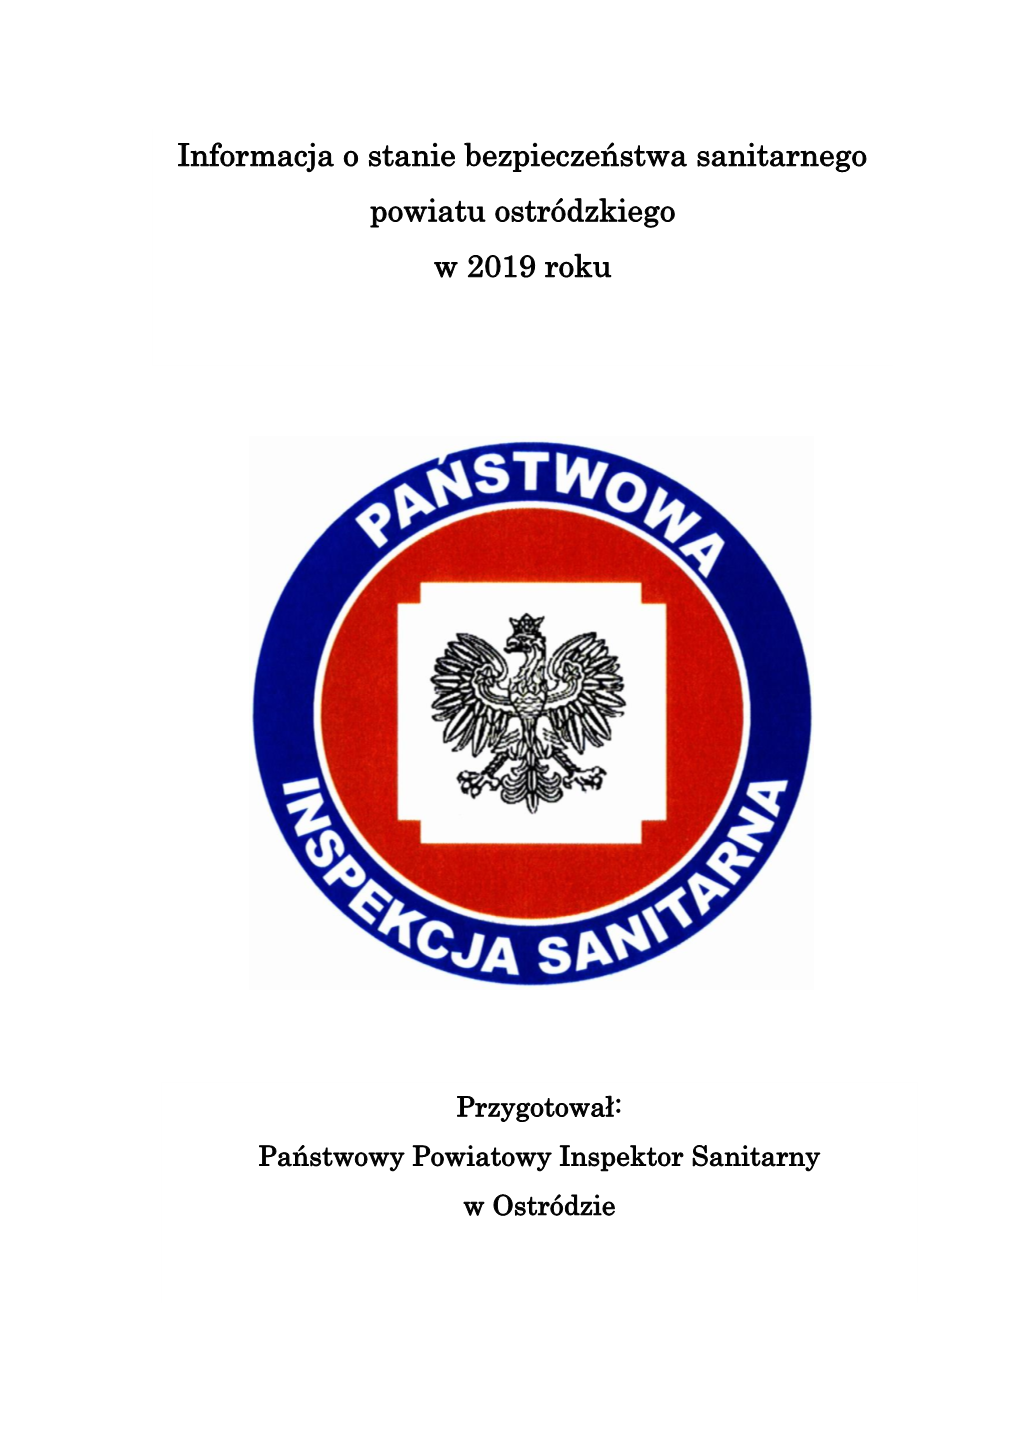 Informacja O Stanie Bezpieczeństwa Sanitarnego Powiatu Ostródzkiego W 2019 Roku